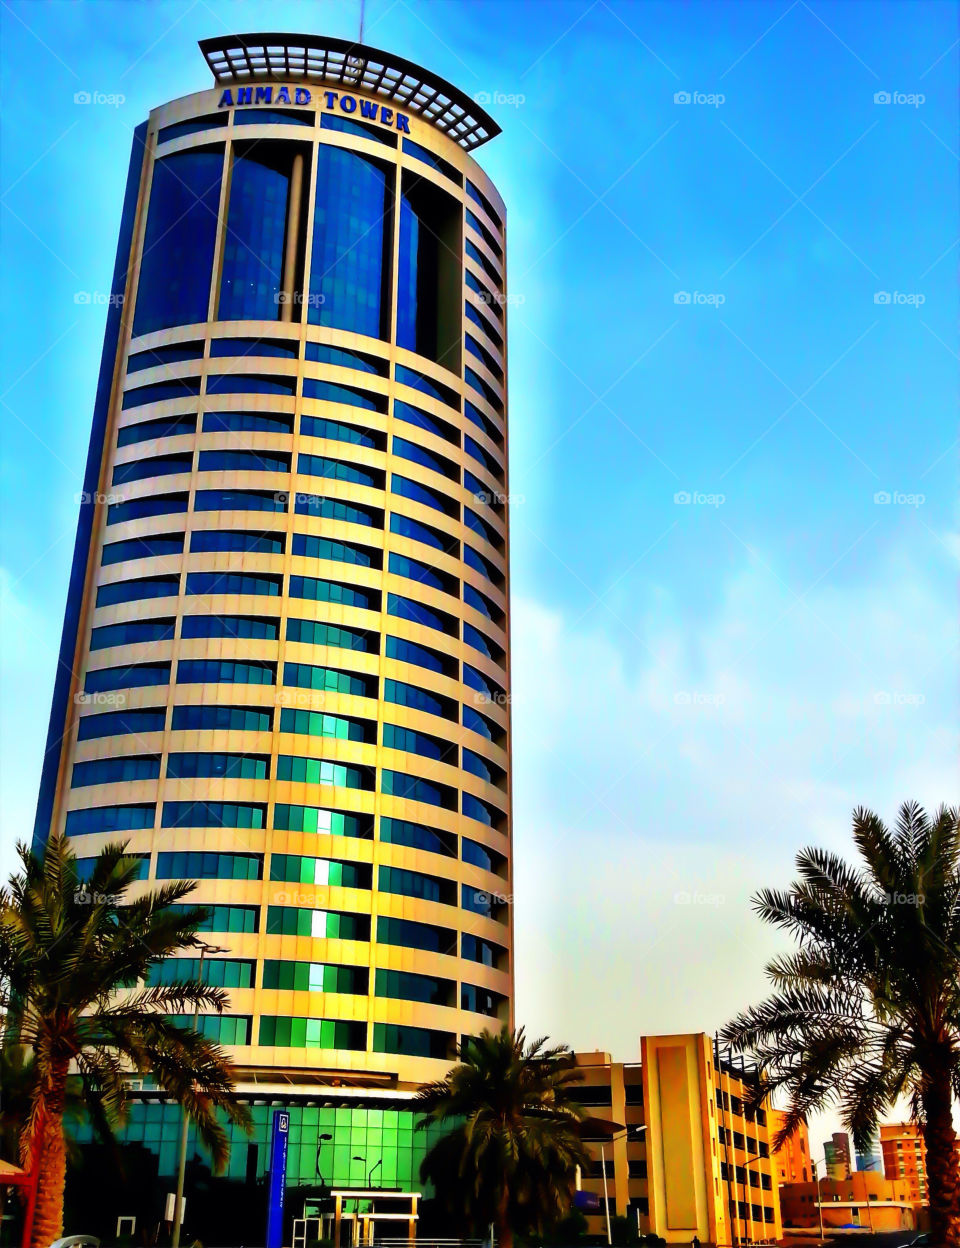 Ahmad tower kuwait